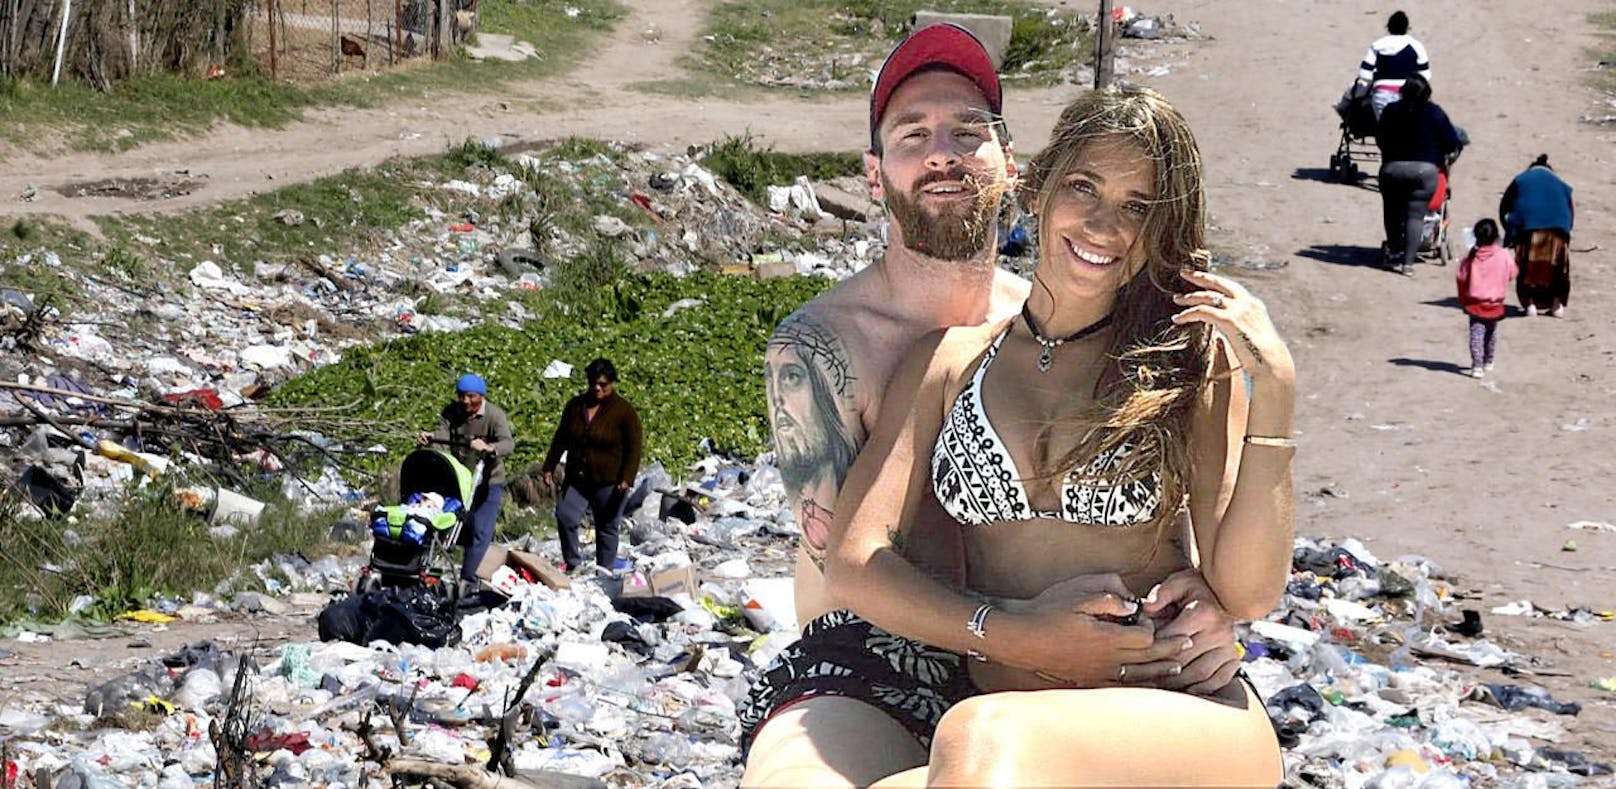 Messi heiratet Jugendliebe mitten im Drogen-Slum